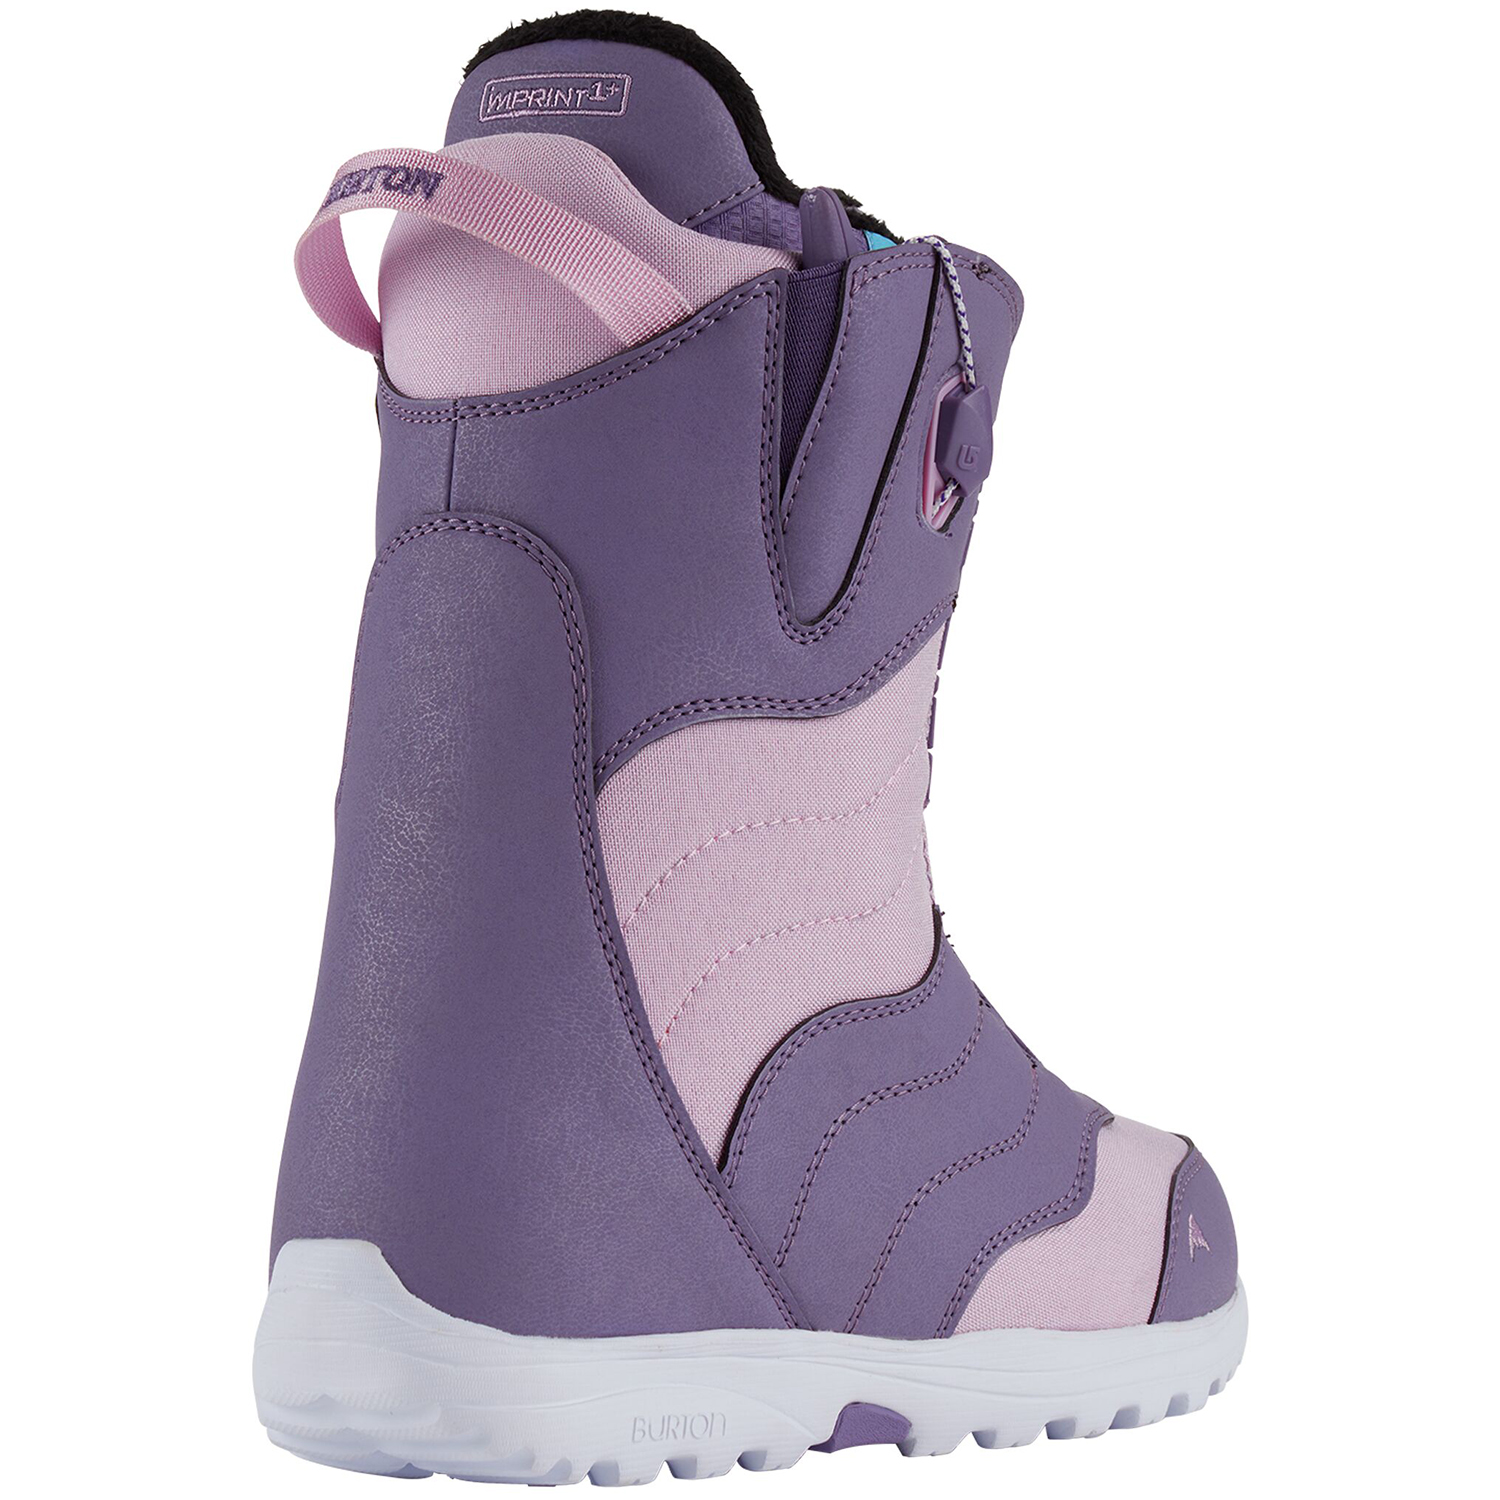 Ботинки сноубордические Burton 20-21 Mint Speedzone Purple/Lavender, цвет фиолетовый, размер 41,5 EUR 10627107500 - фото 2